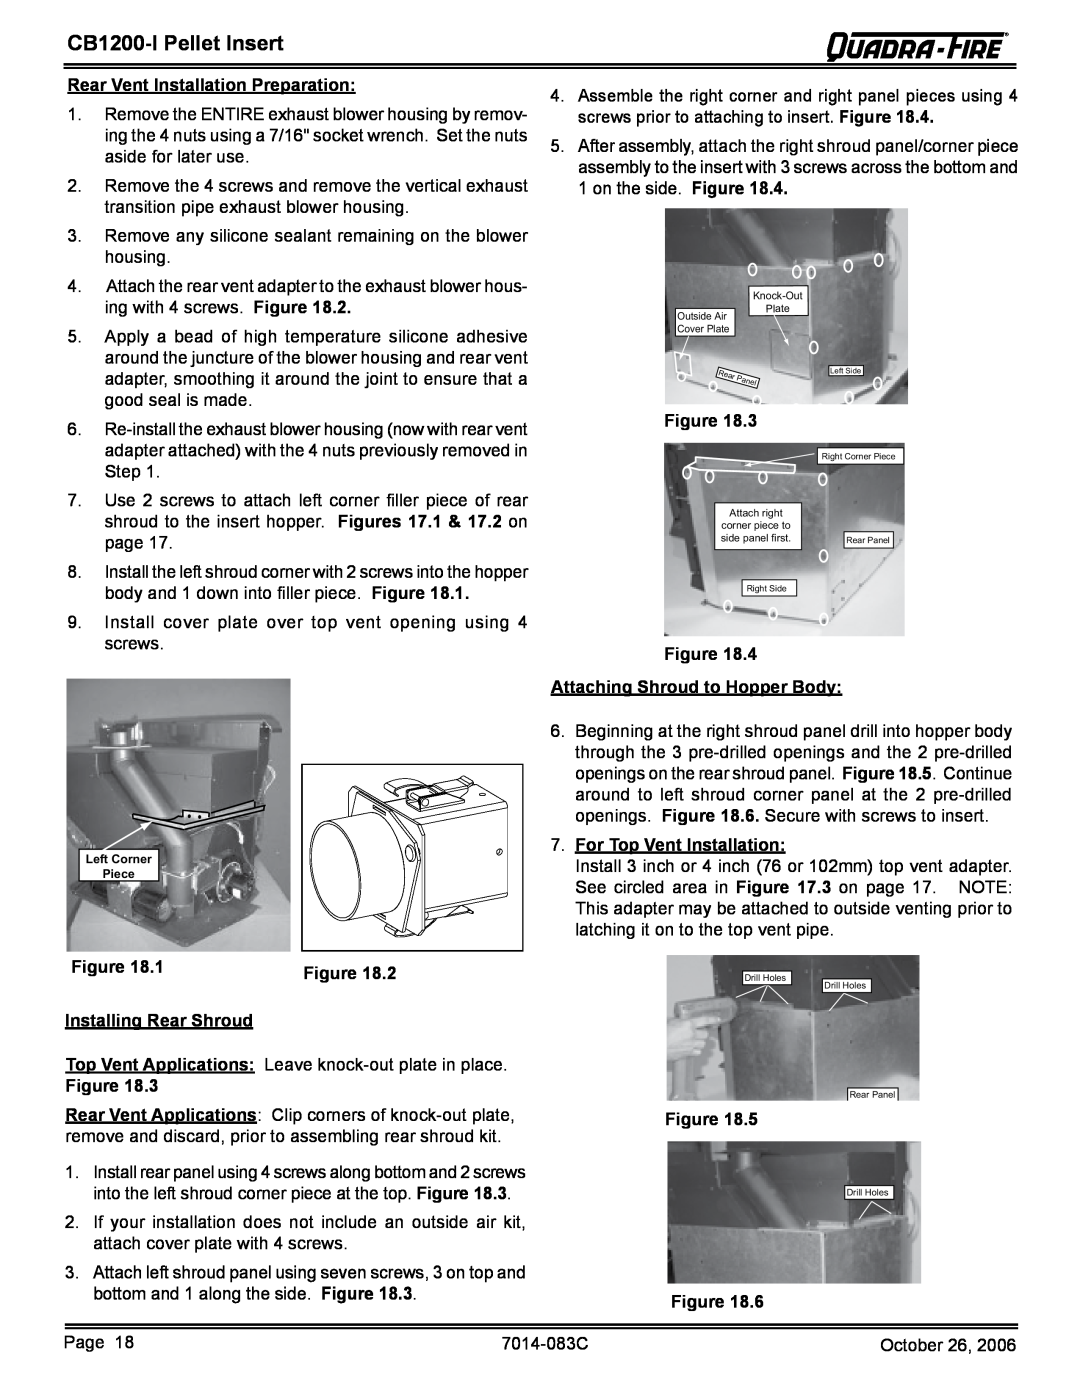 Quadra-Fire CB1200I-B owner manual CB1200-IPellet Insert, Rear Vent Installation Preparation 